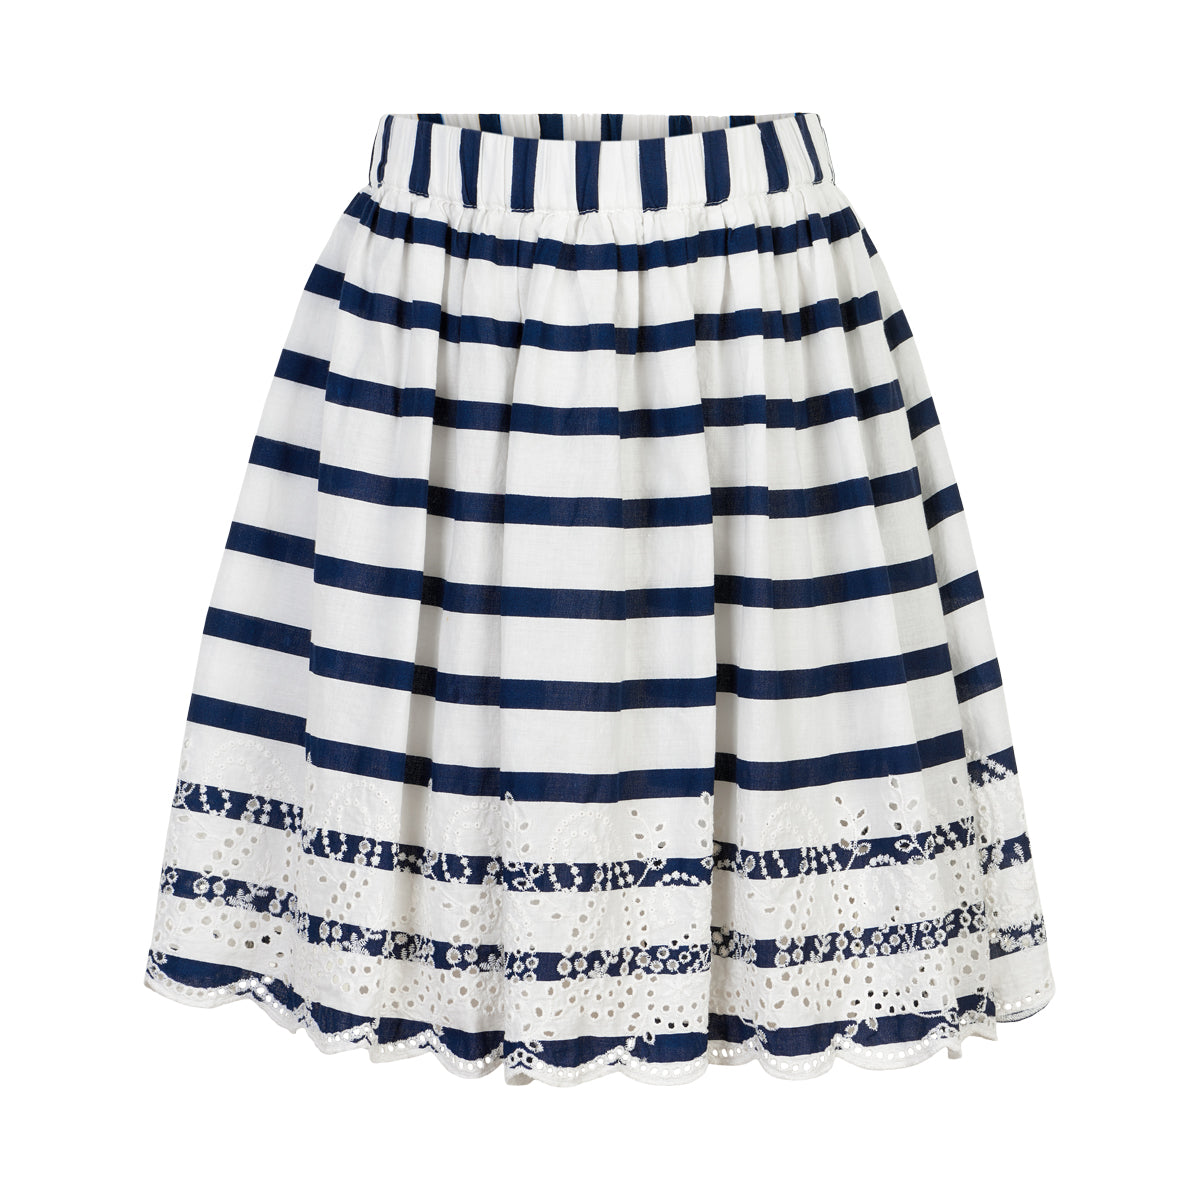 Creamie - Skirt Cotton Stripes (821408) - White / Total Eclipse